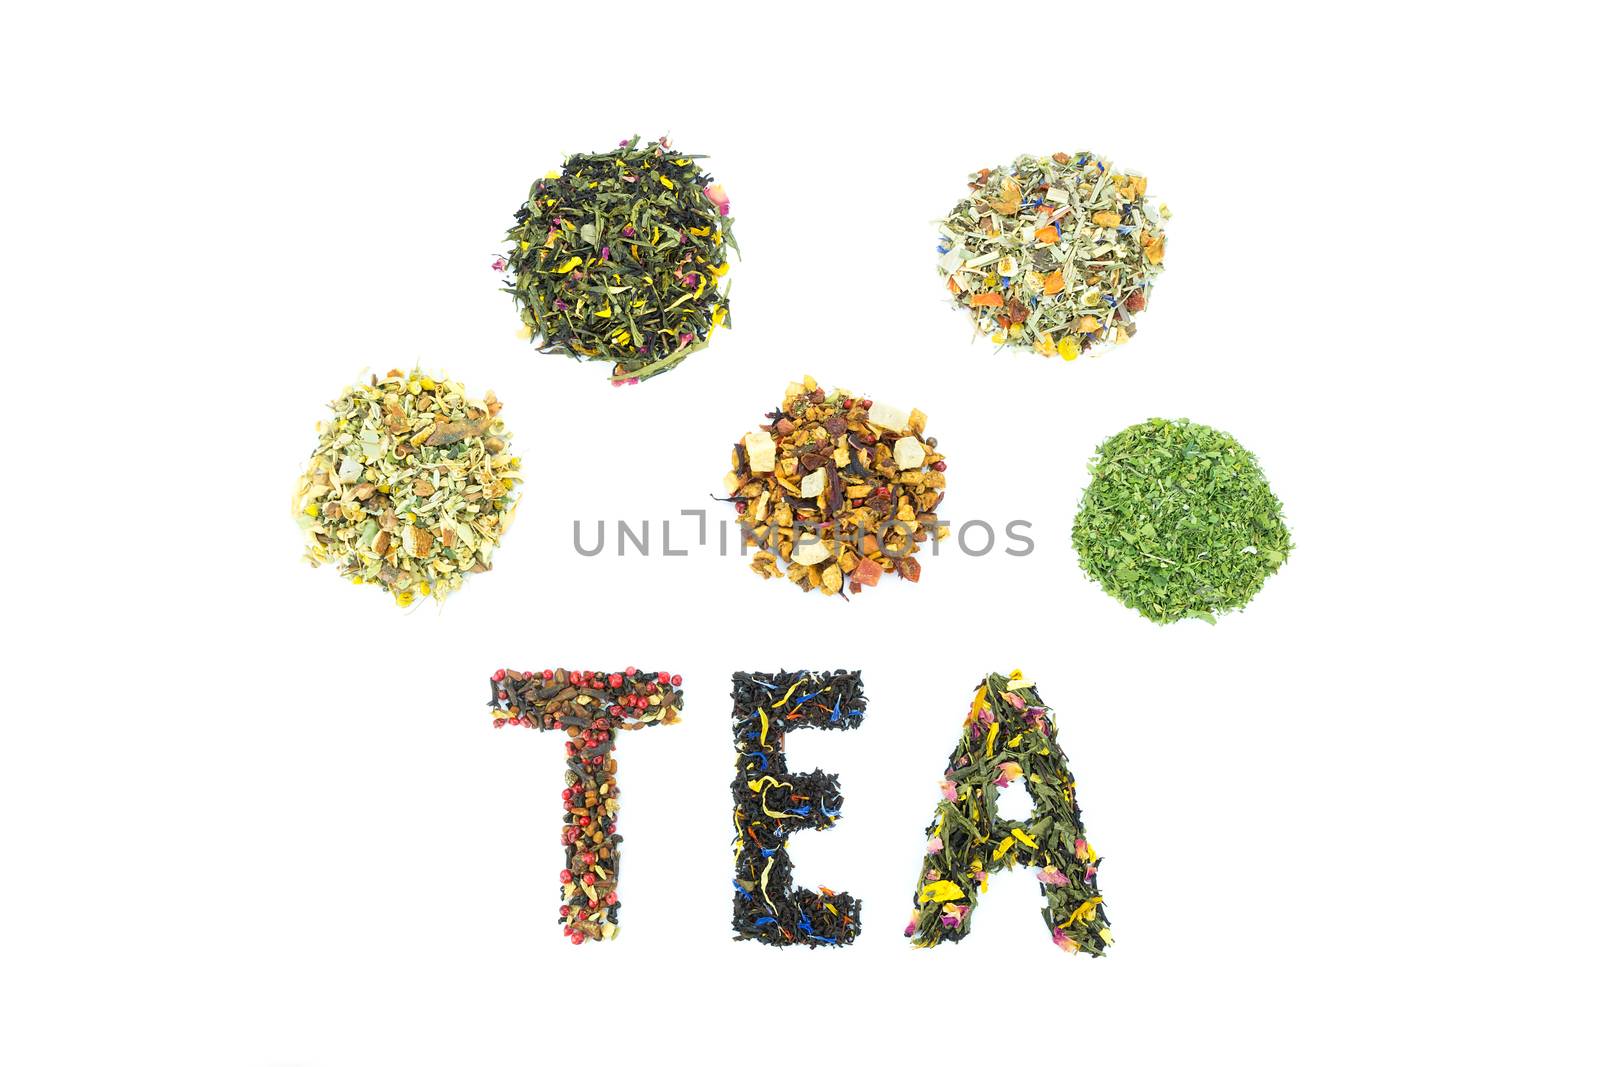 Word TEA with assortment of tea species by BenSchonewille